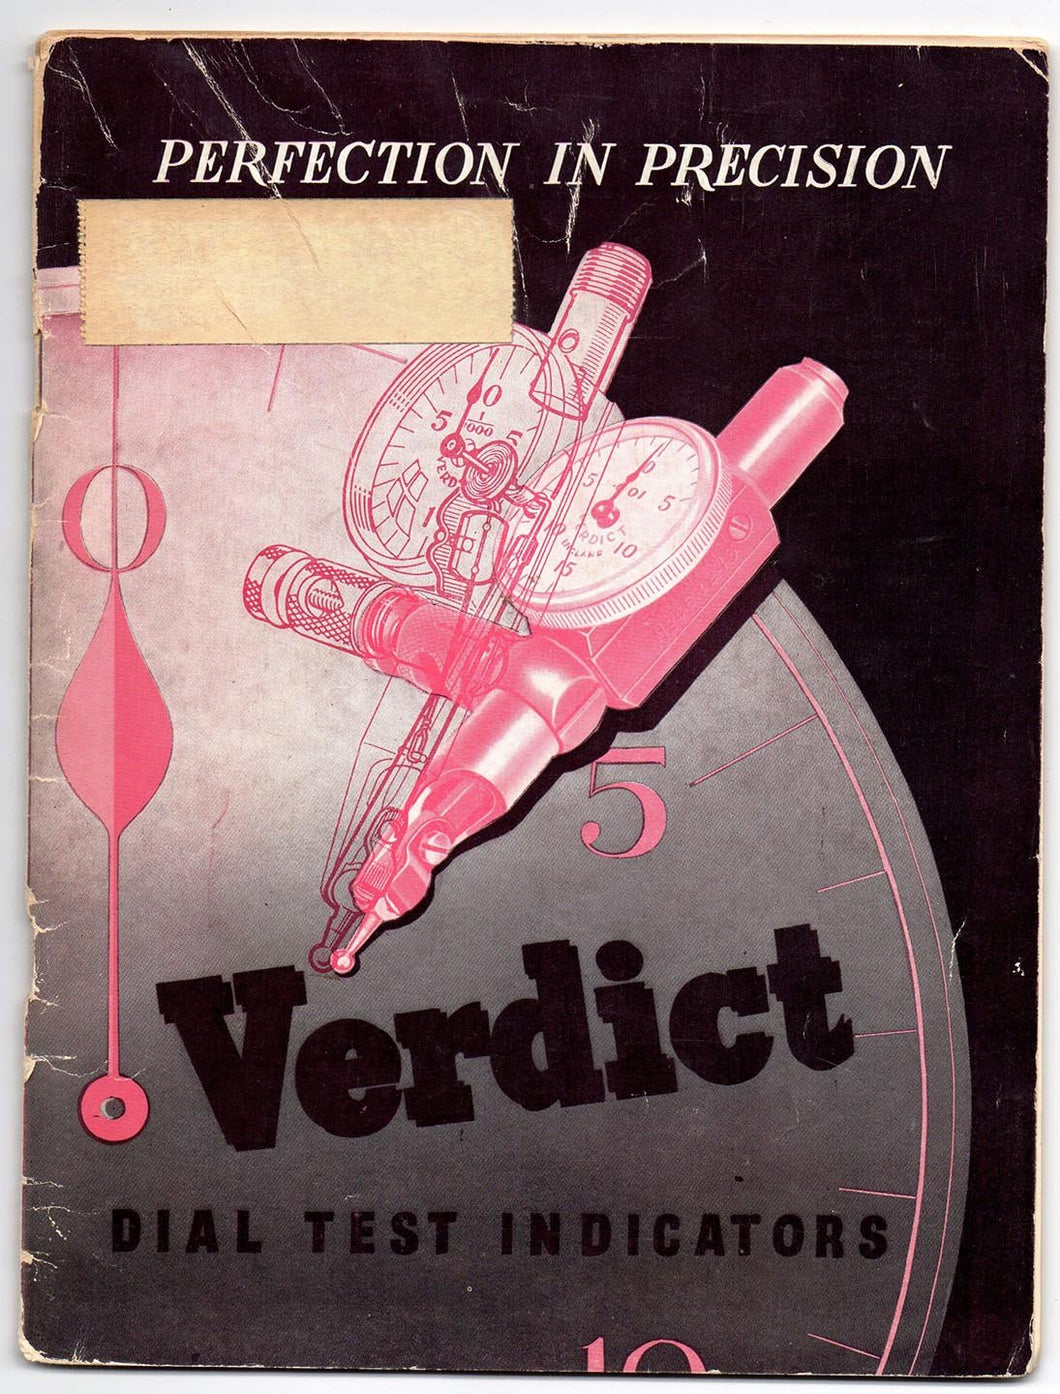 Perfection in Precision: Verdict Dial Test Indicators